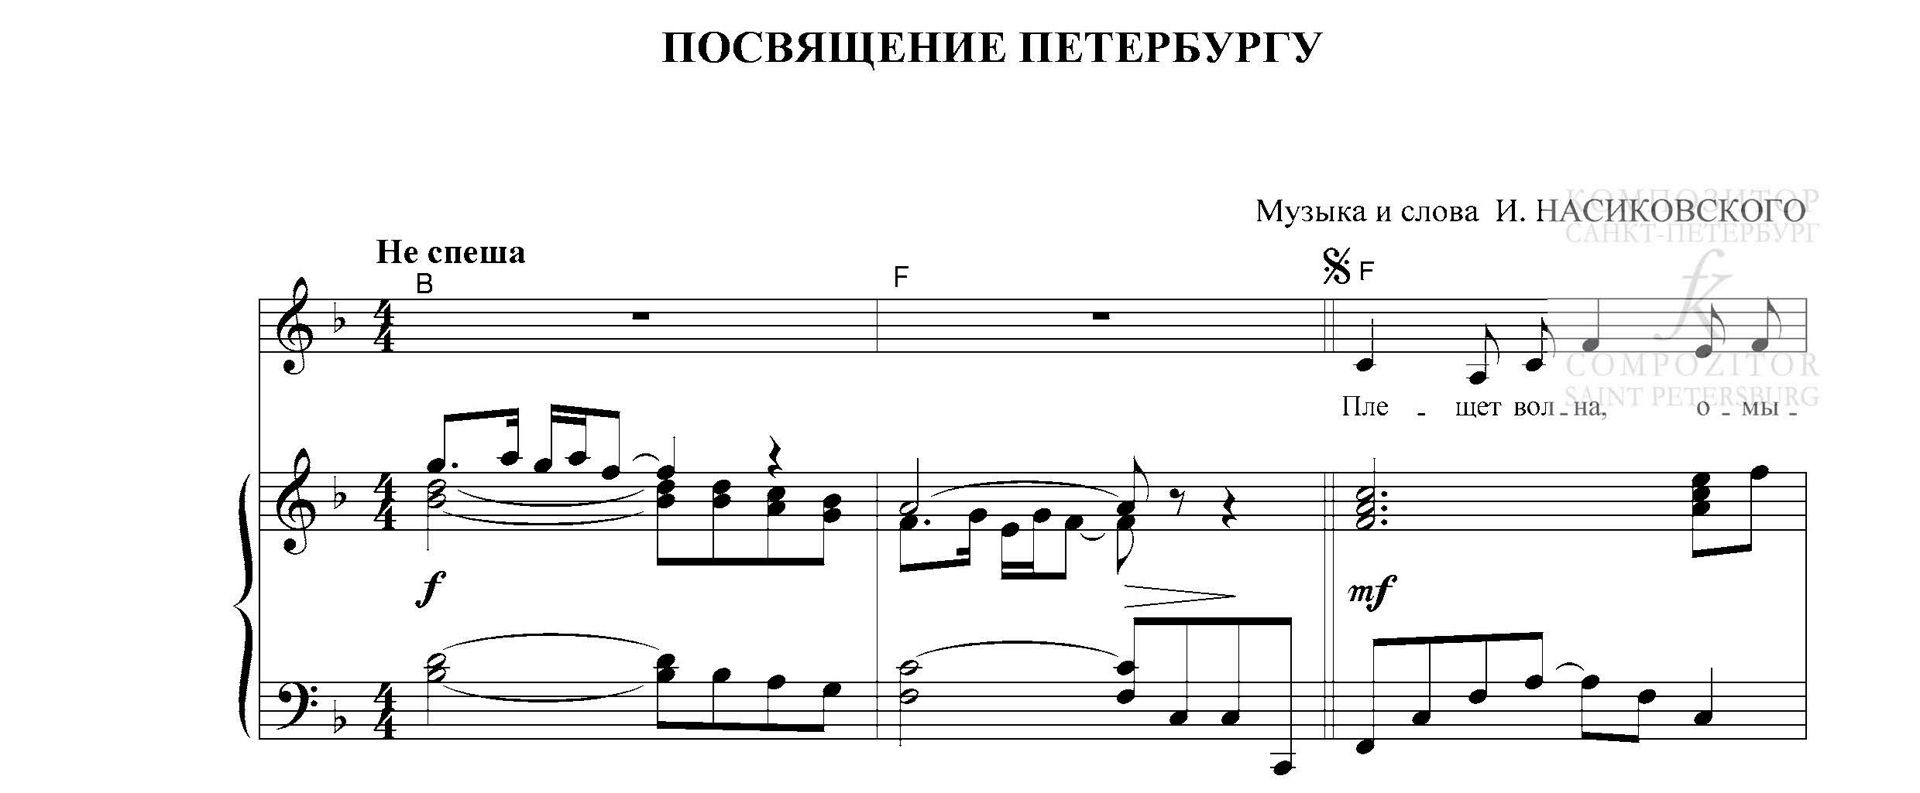 Посвящение Петербургу. Песня для голоса и фп. (гитары)